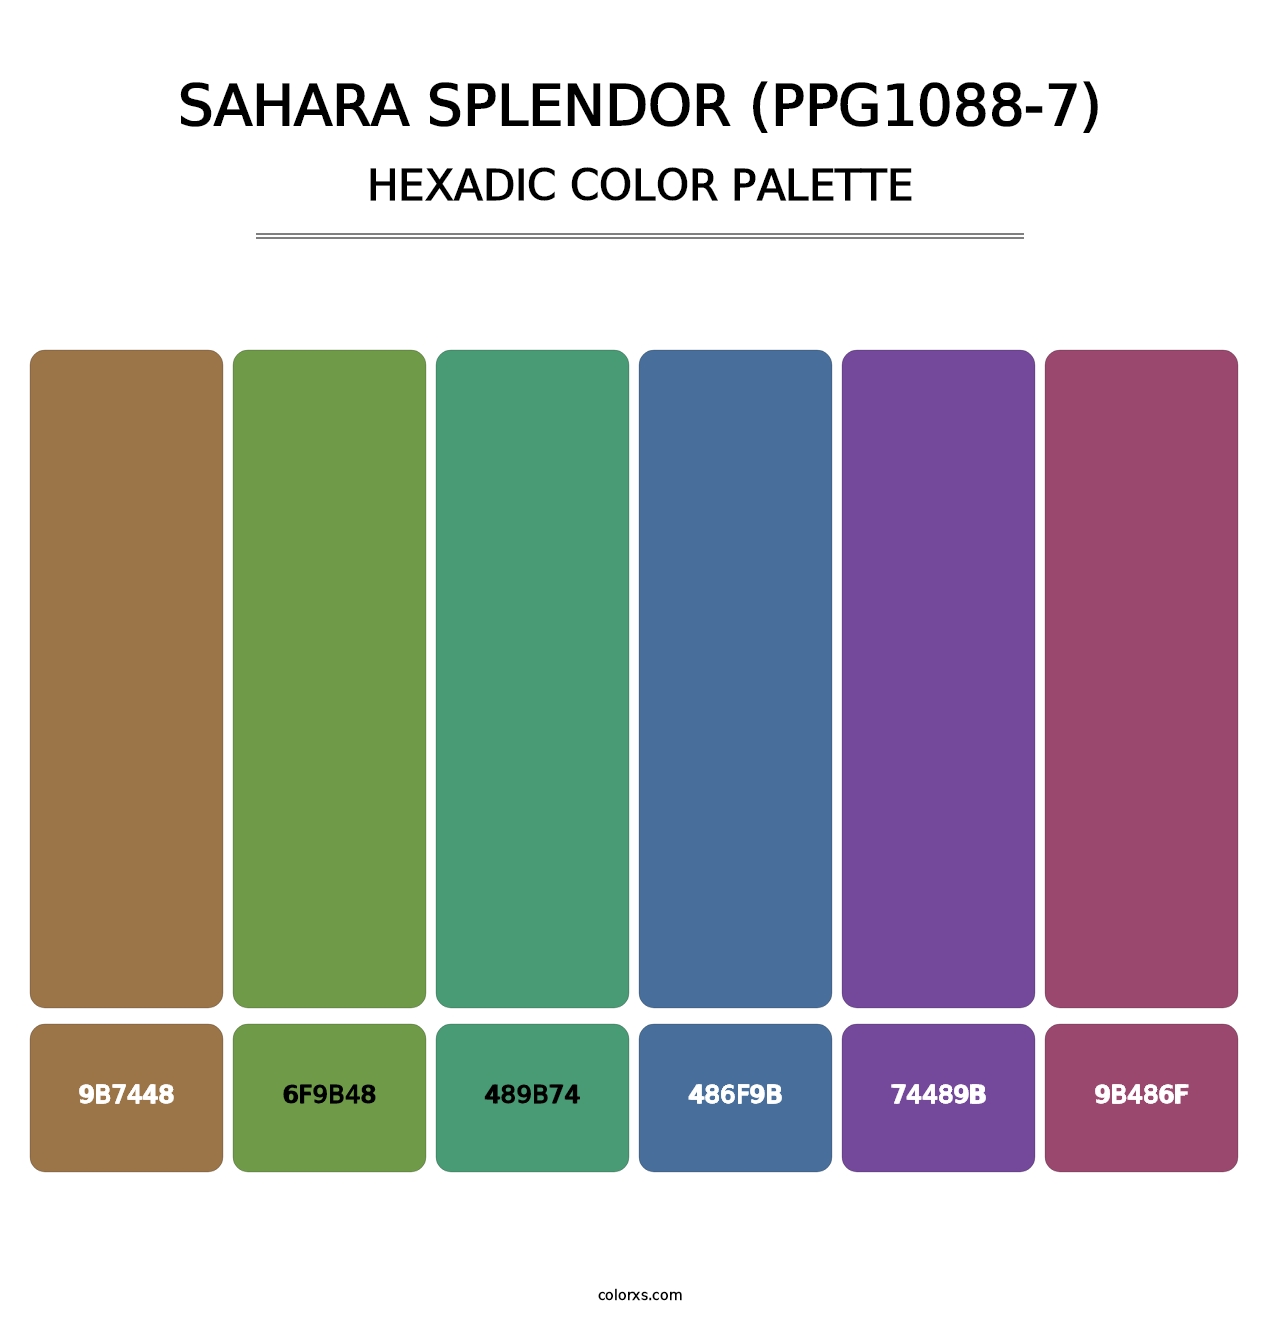 Sahara Splendor (PPG1088-7) - Hexadic Color Palette